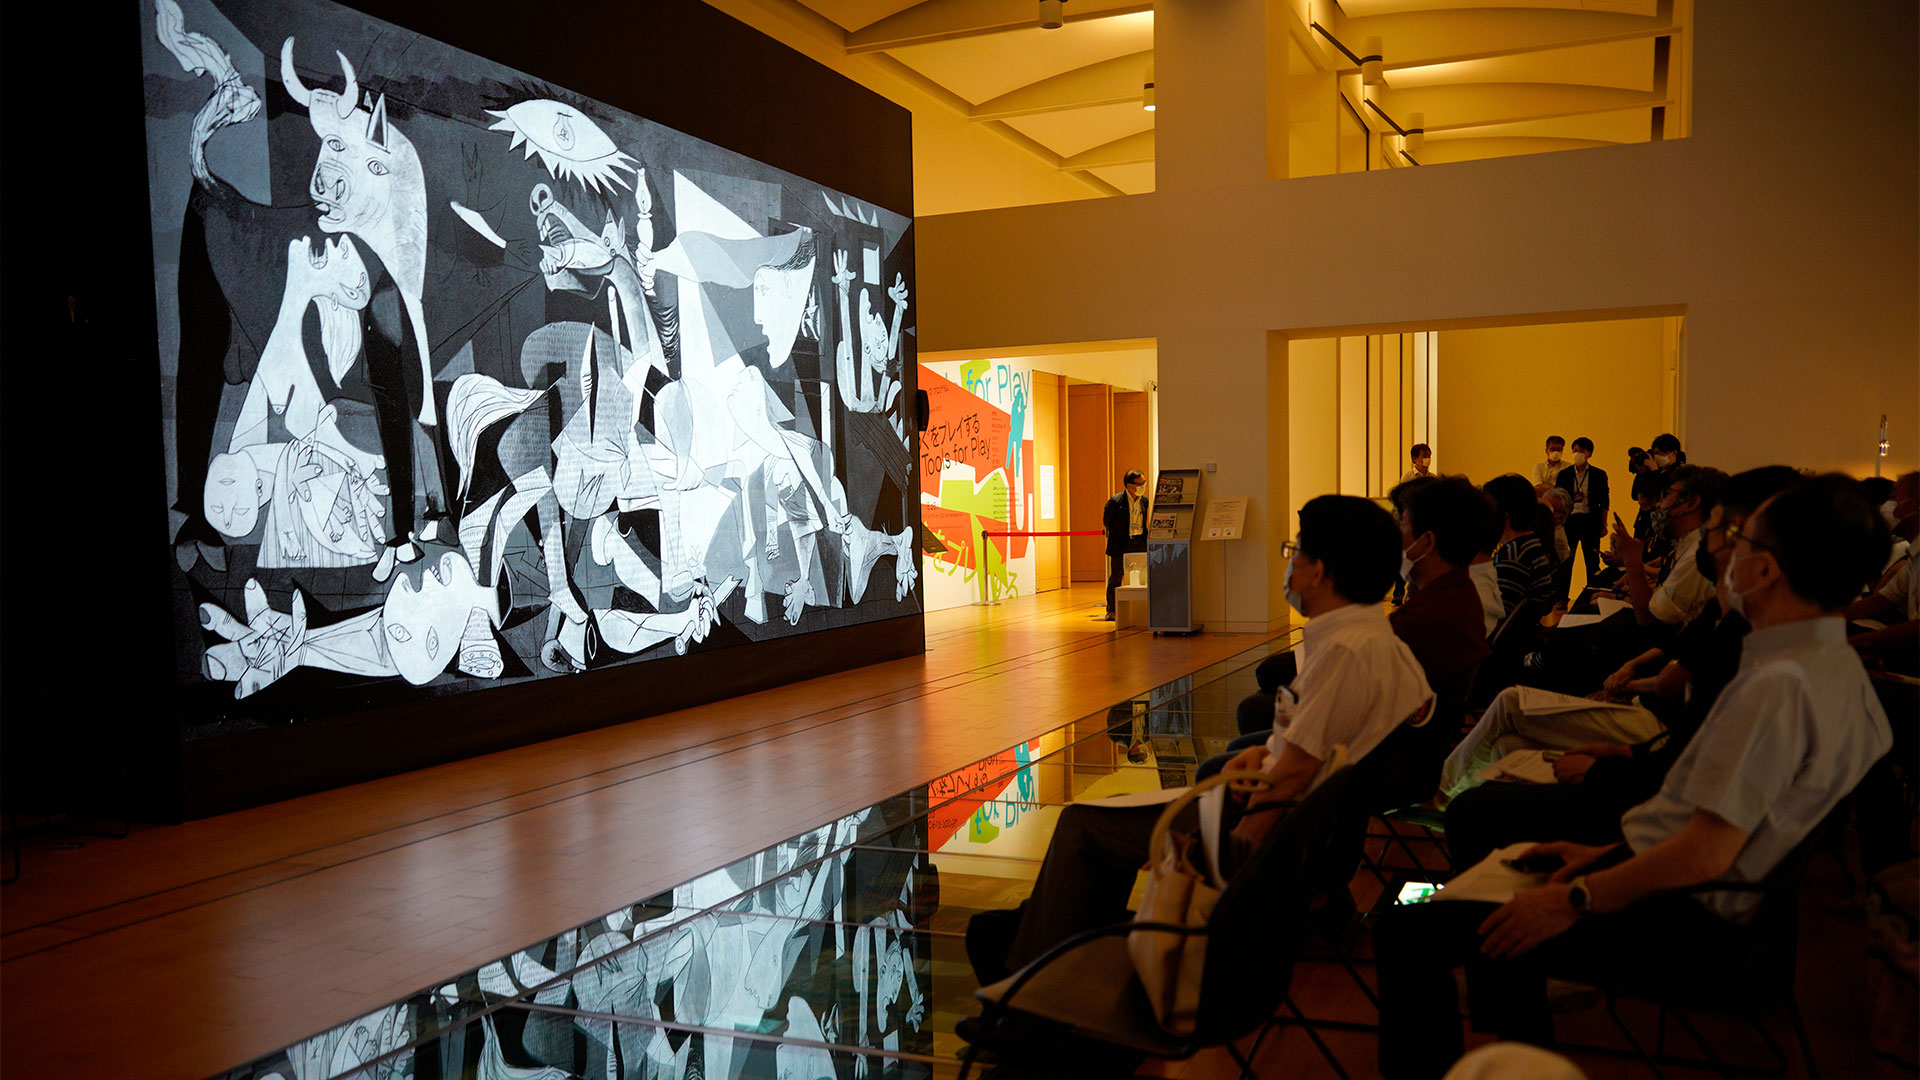 Dogodek 'Guernica' je tu!  je močan prostor za slikanje 8K v NTT Intercommunication Center (ICC) v Tokiu na Japonskem